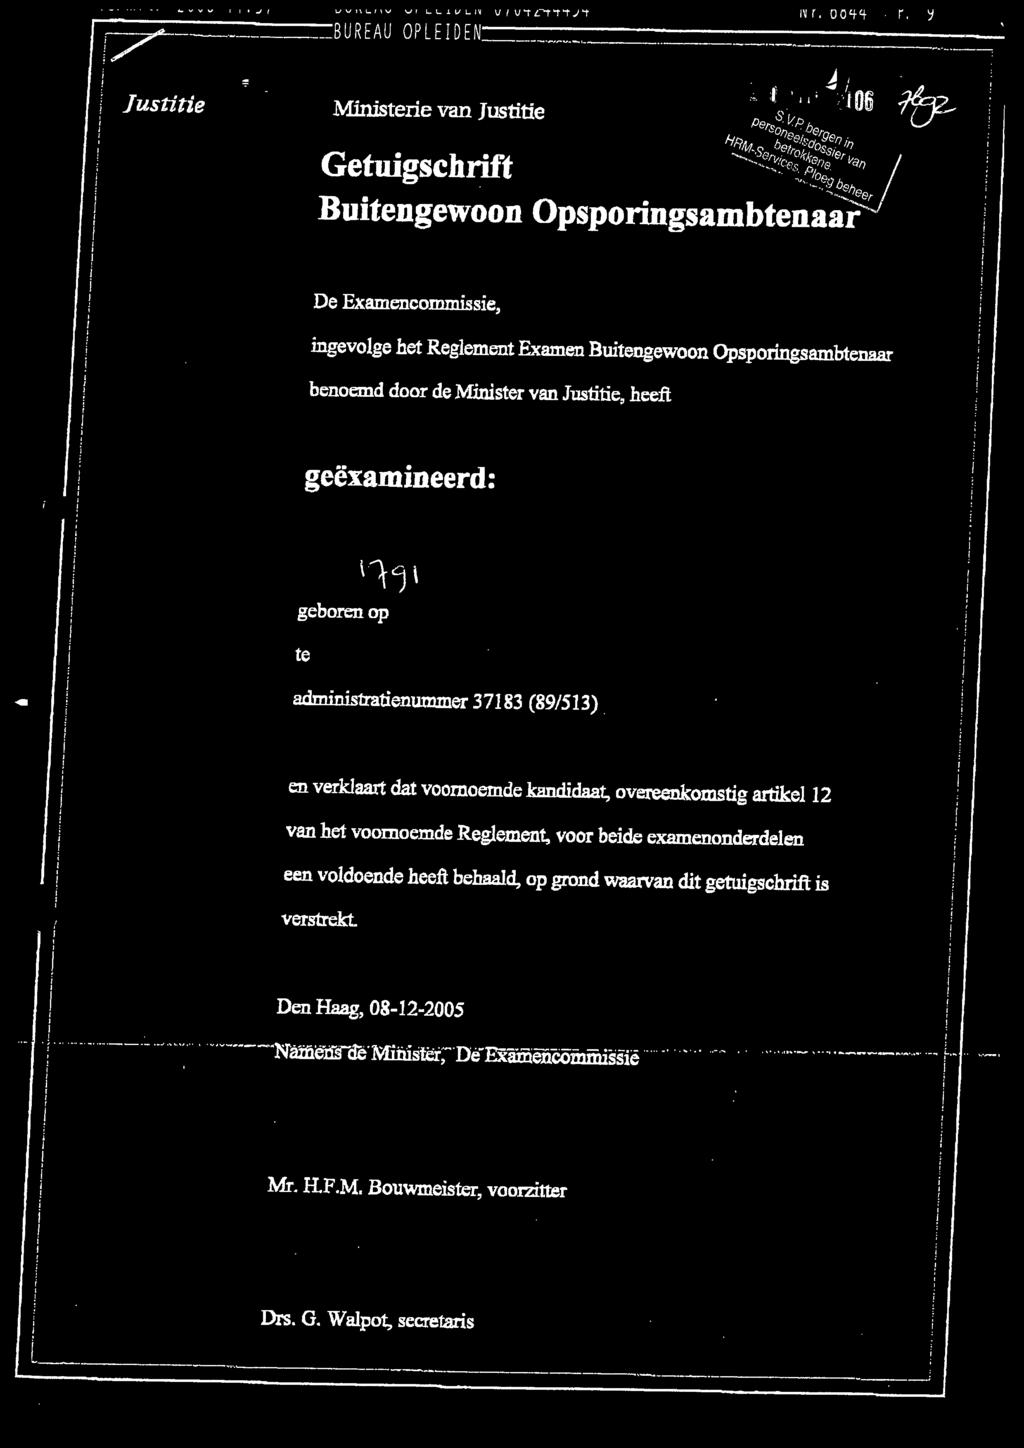 dit getuigschrift is verstrekt. 1 1 / Den Haag, 08-12-2005 1 1 ; - ---- -' "'" -~----- Nàifle1r:n:KfMînîster, oe Exämencommiss1e.